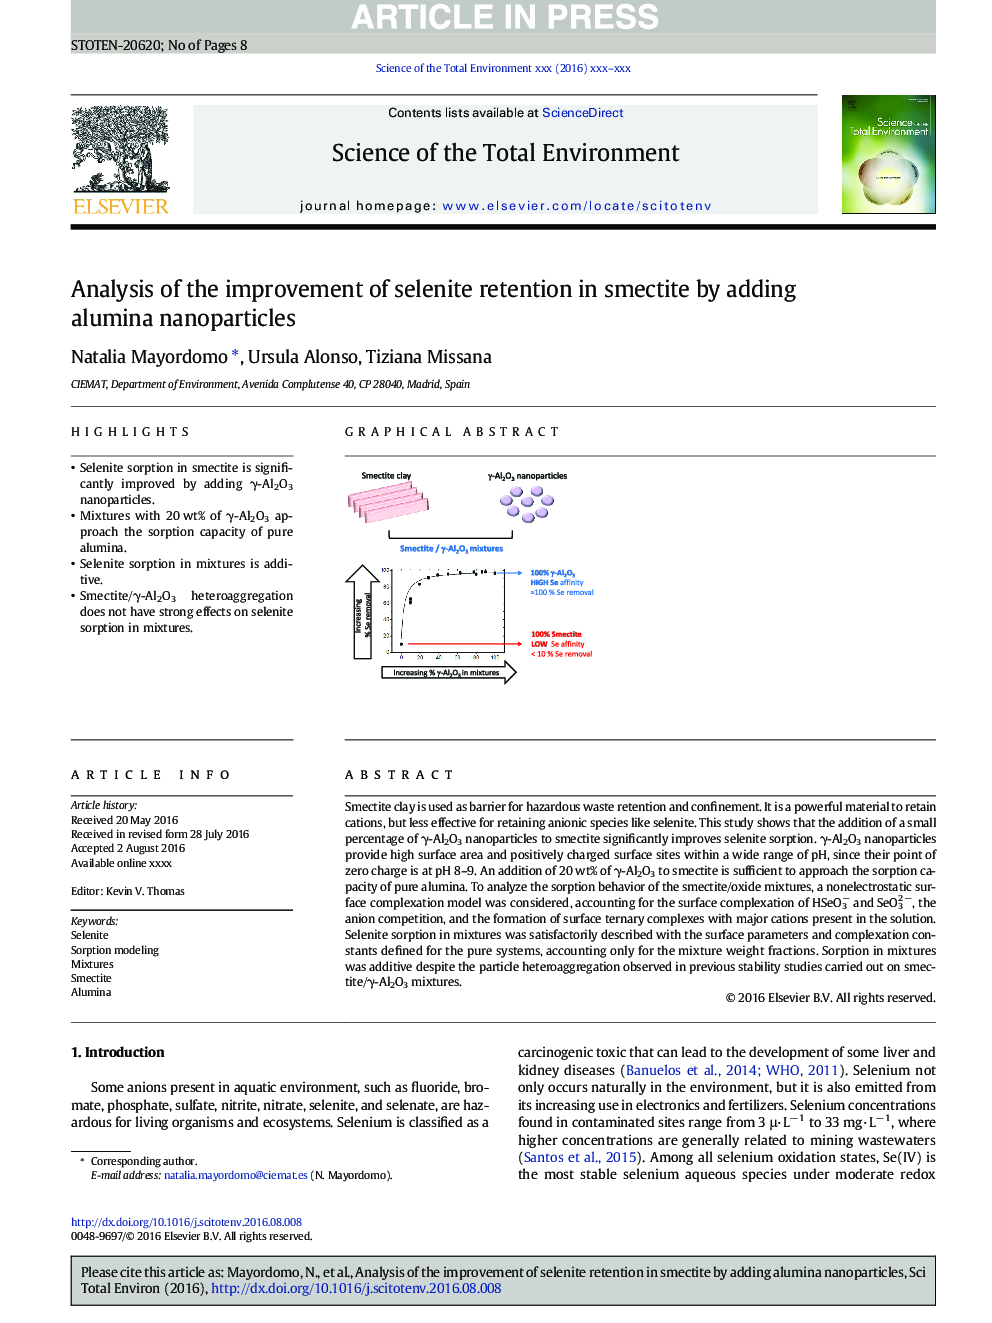 تجزیه و تحلیل بهبود ضایعات سلنیت در اسمکتیت با افزودن نانوذرات آلومینا 